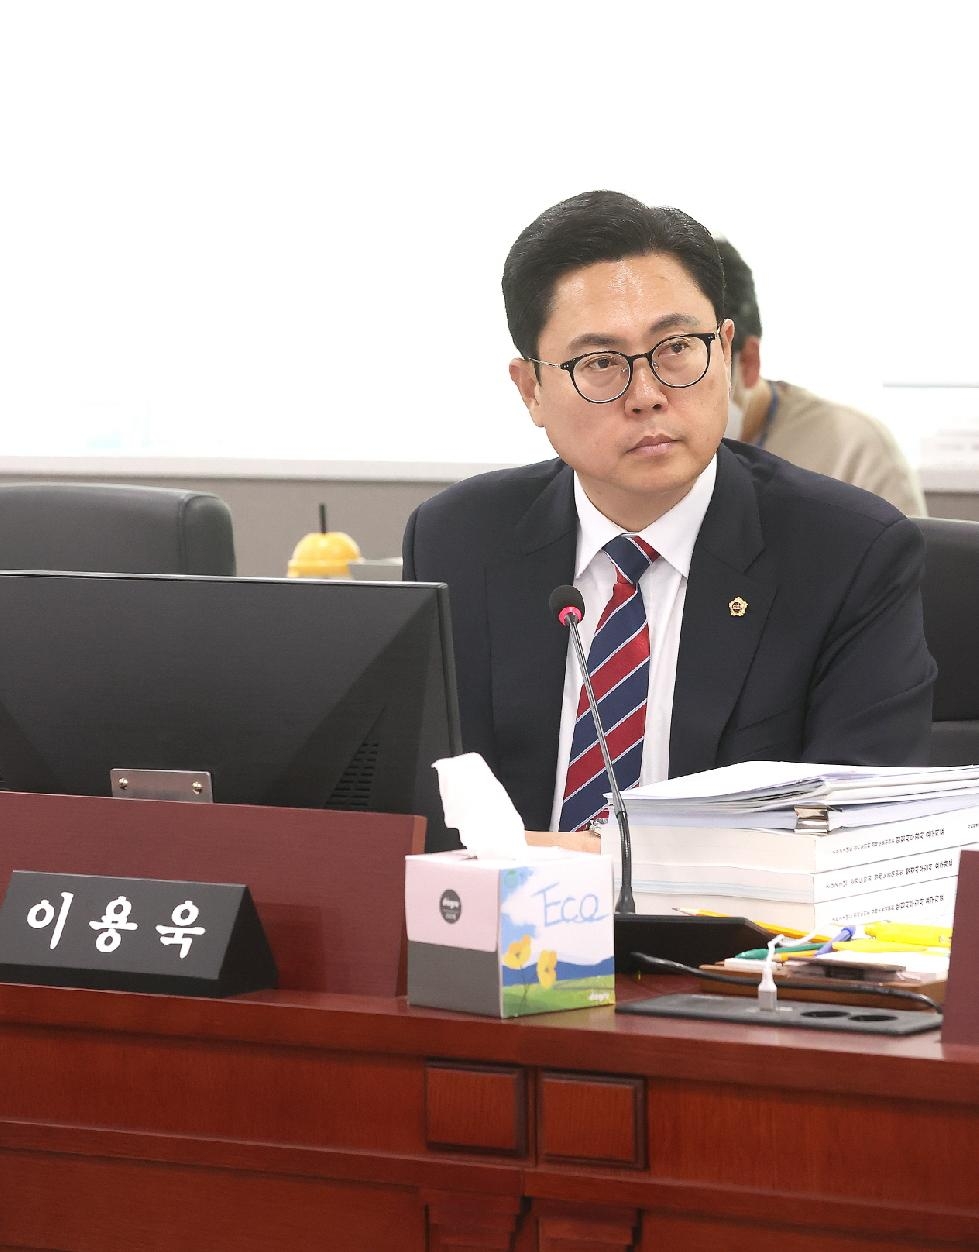 경기도의회 이용욱 의원, 정부의 사회적경제 정책에 대응한 경기도 방안에 감사 표시